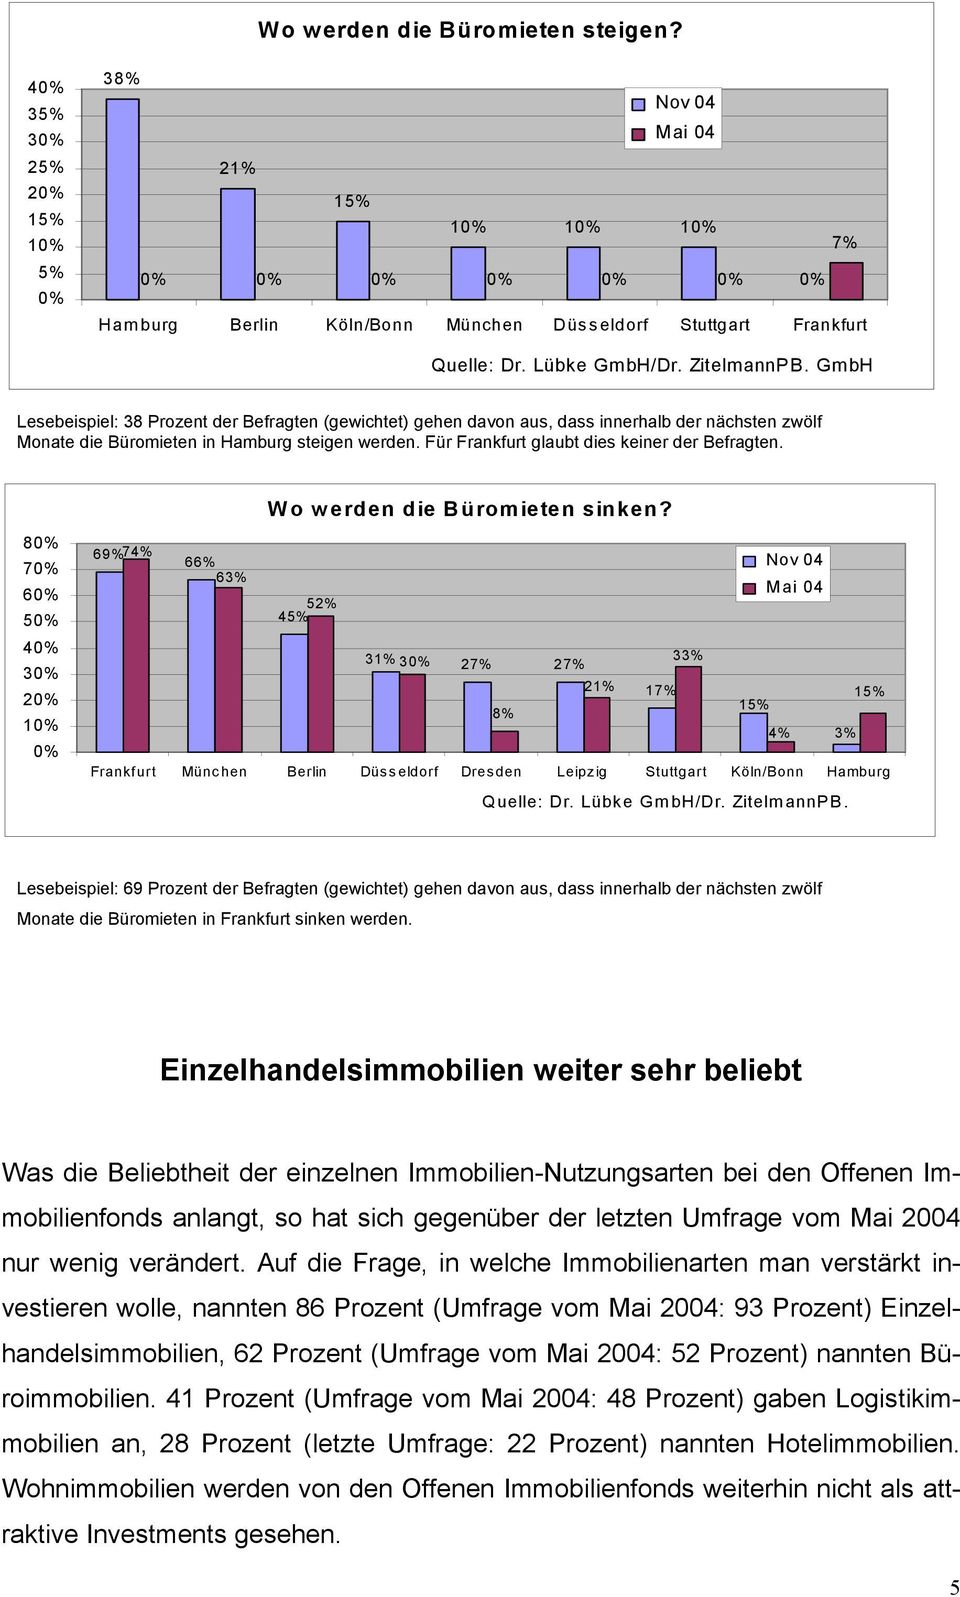 zwölf Monate die Büromieten in Hamburg steigen werden. Für Frankfurt glaubt dies keiner der Befragten. 8 7 6 5 4 3 2 1 69% 74% 66% 63% Wo werden die Büromieten sinken?